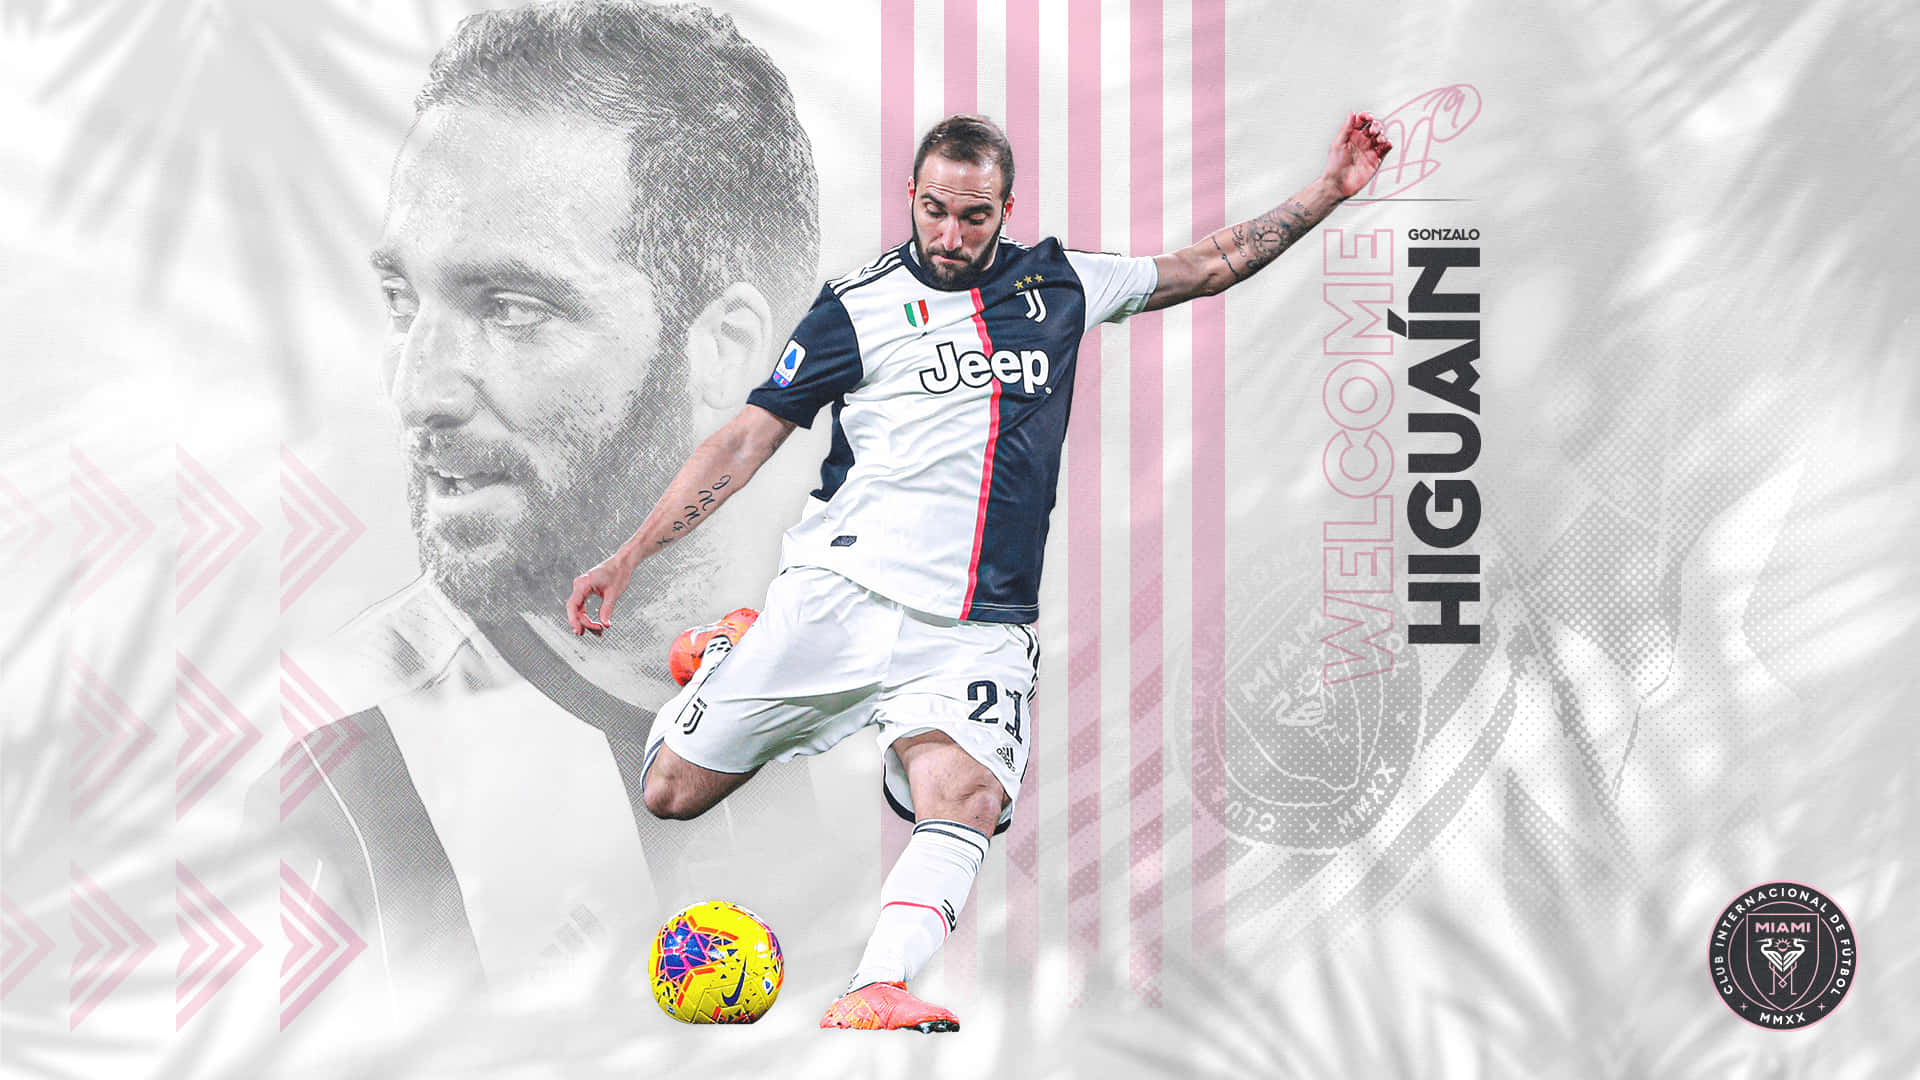 Gonzalohiguain Juventus Kick Fan Art - Gonzalo Higuain Juventus Spark Fan Konst Wallpaper